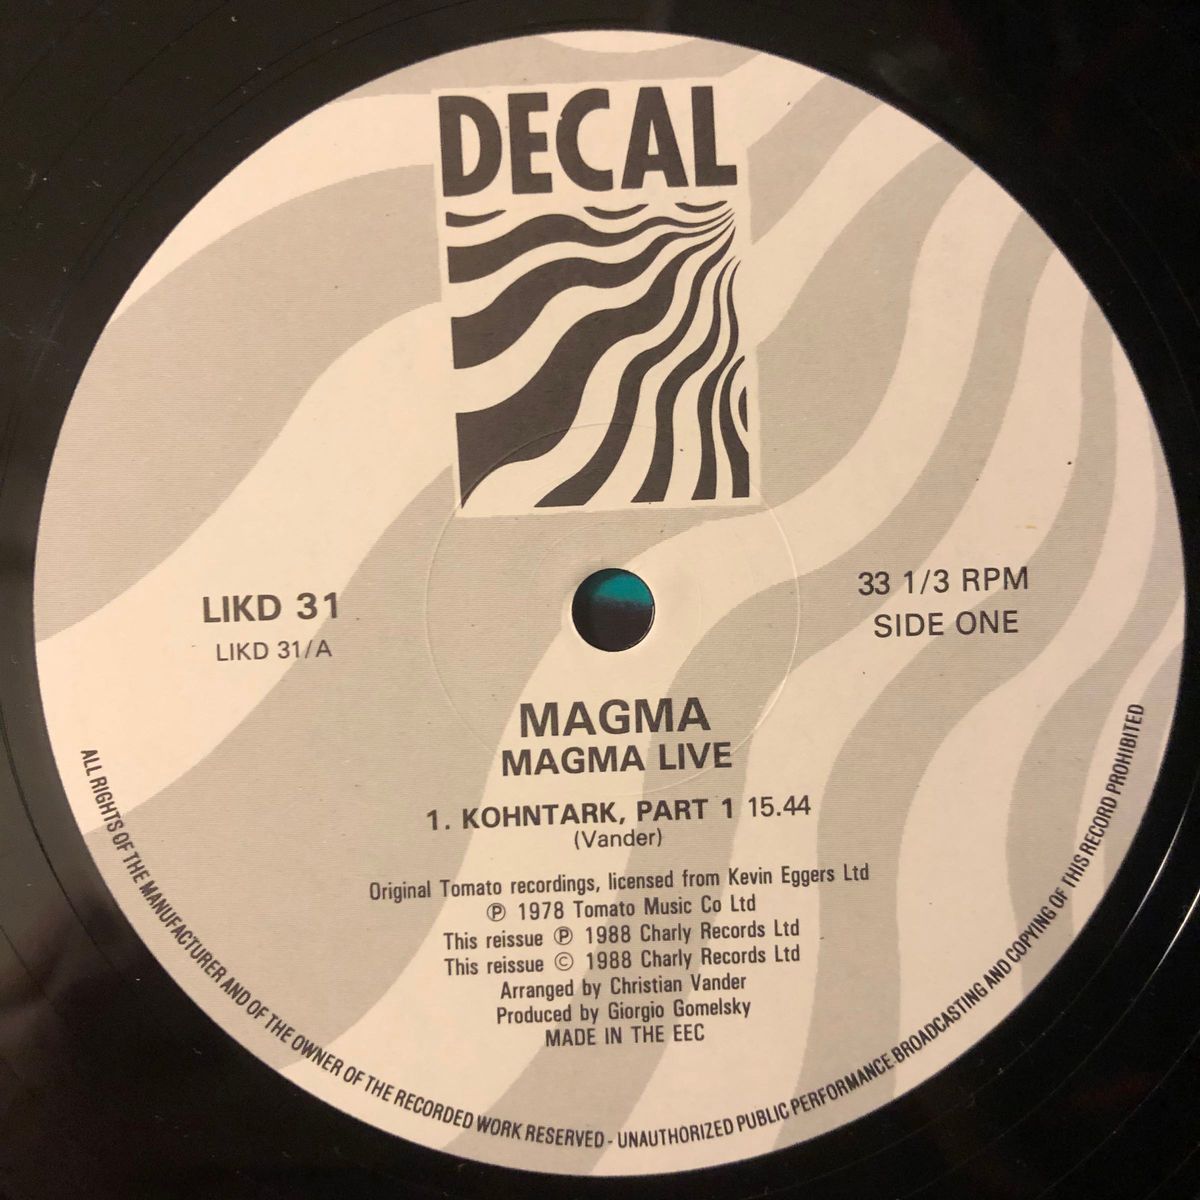 Magma Live レコード LP マグマ ライヴ ライブ プログレ フランス フレンチ vinyl アナログ